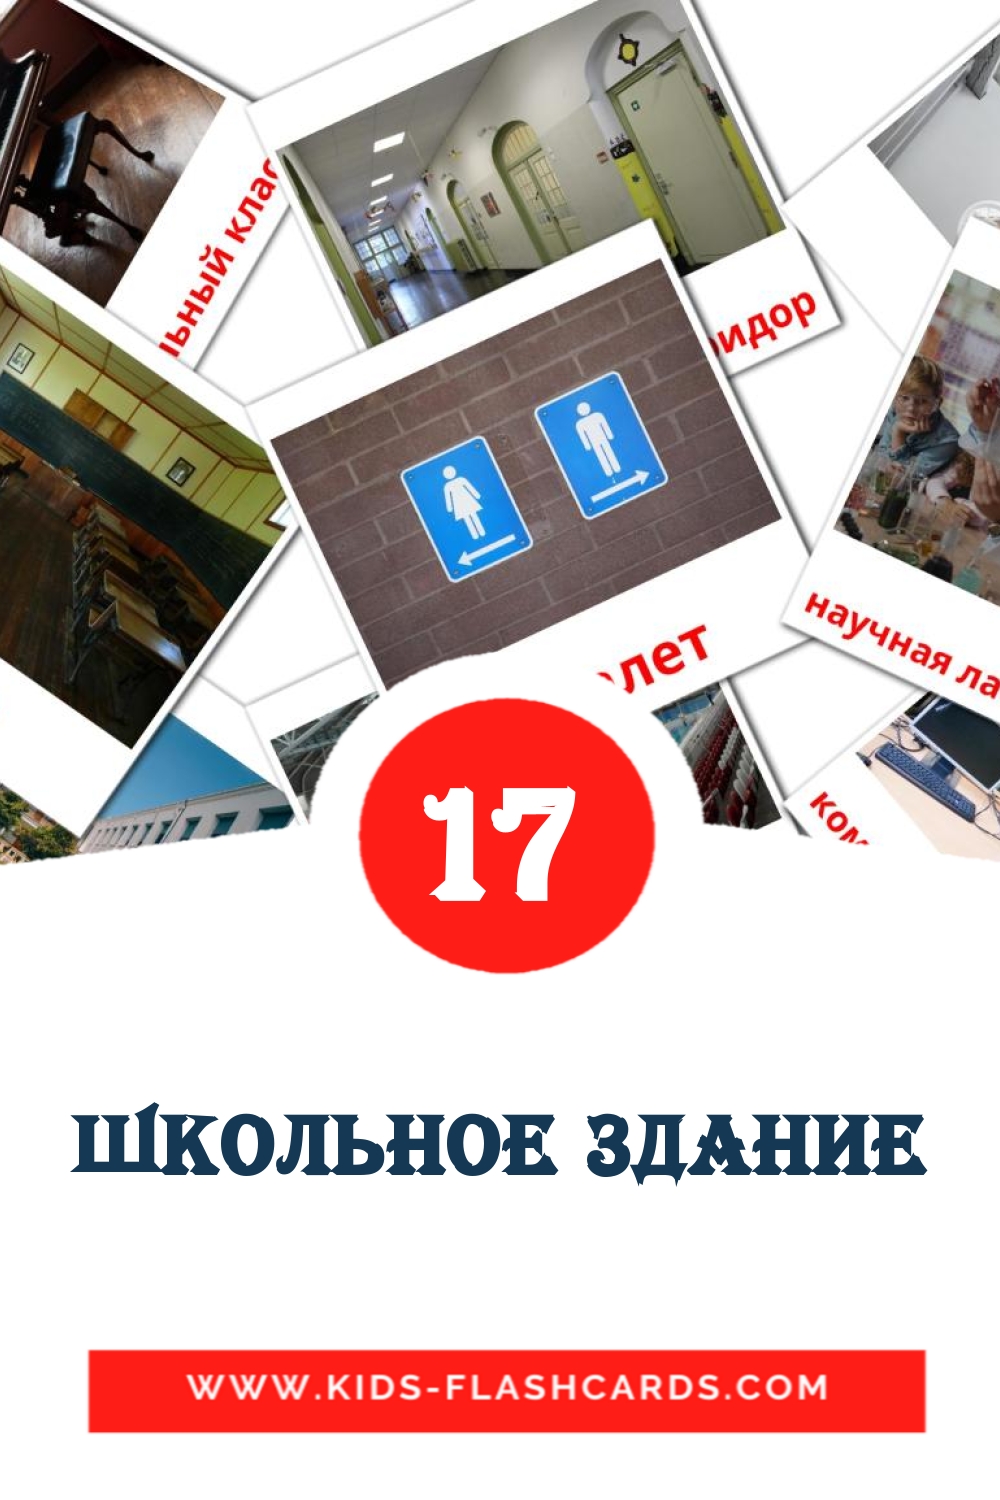 17 cartes illustrées de Школьное здание pour la maternelle en russe